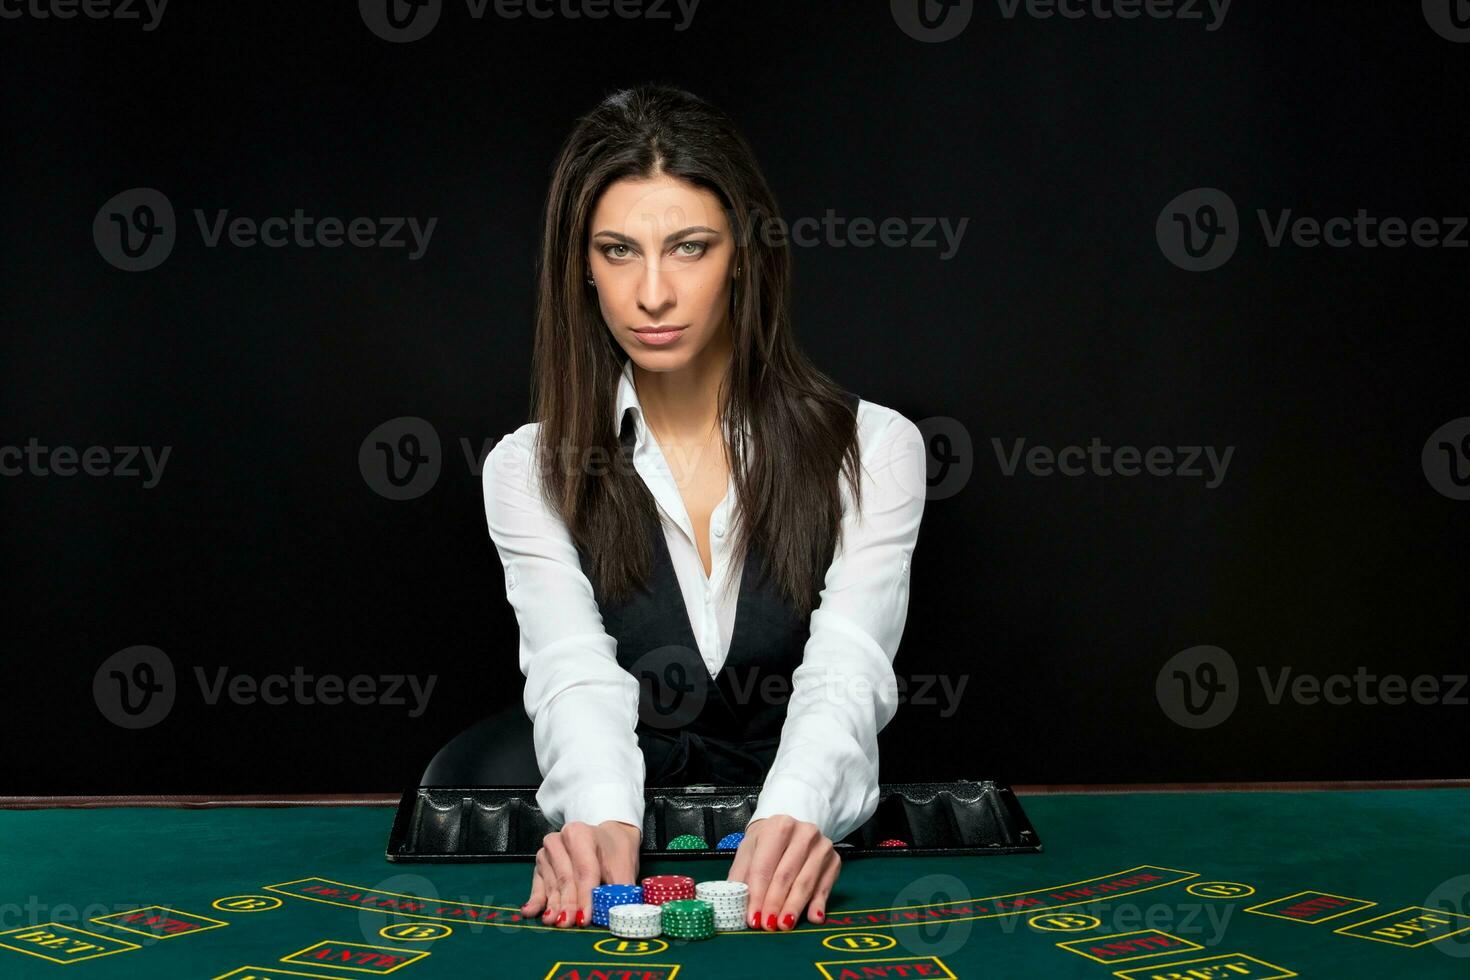 a lindo garota, distribuidor, atrás uma mesa para pôquer foto